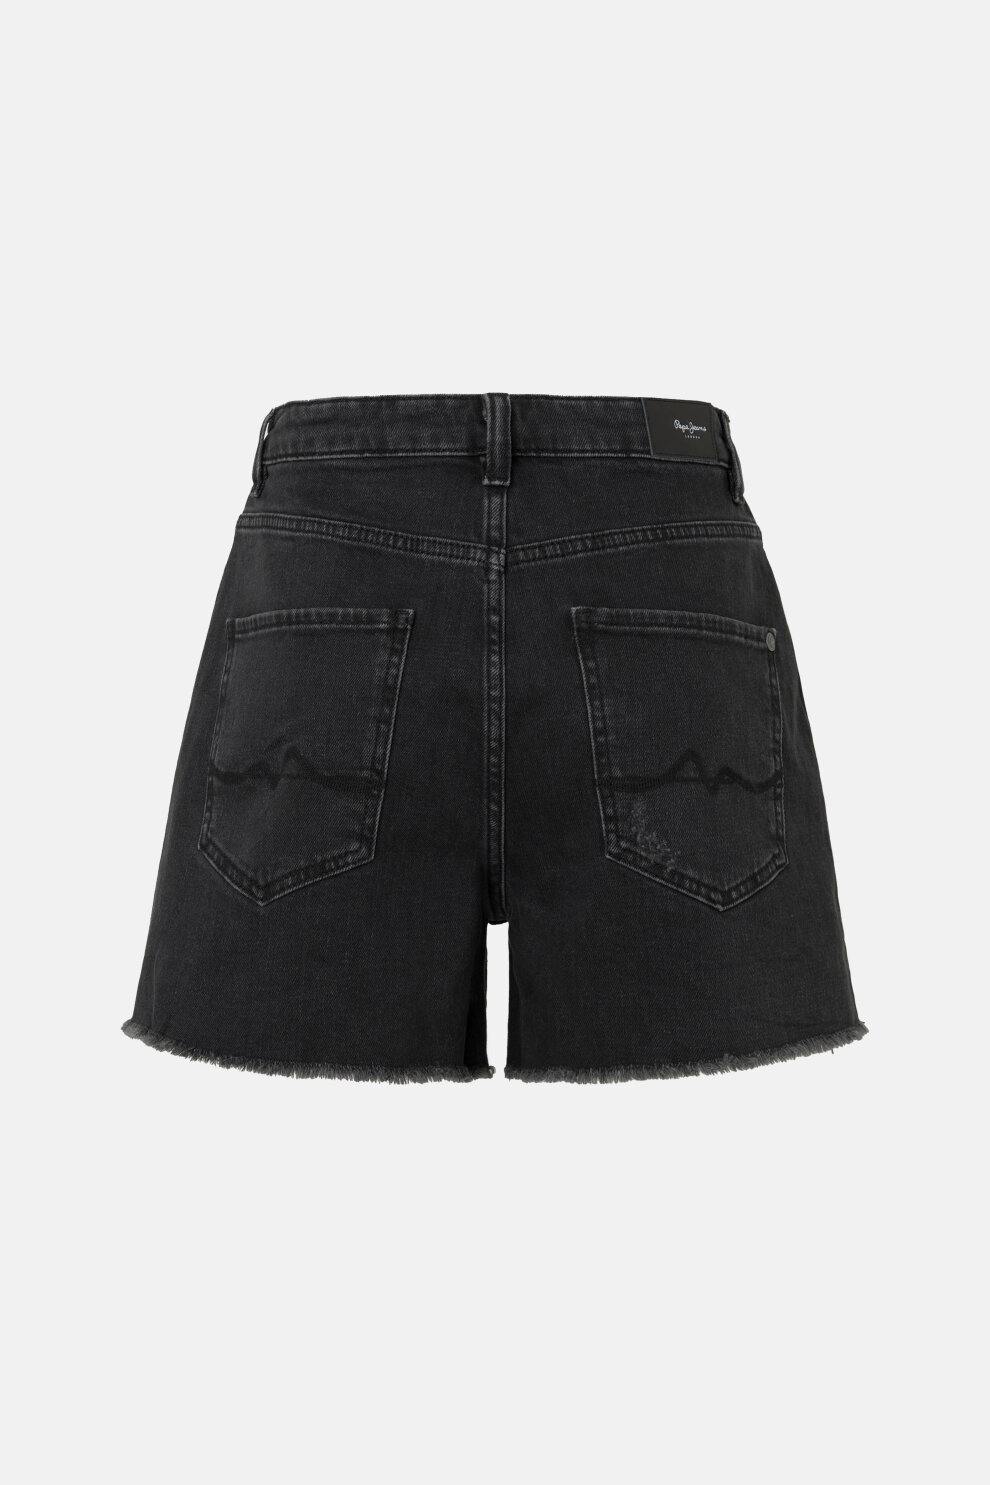 ŽENE - Kratke hlače - Pepe Jeans traper kratke hlače - Crna